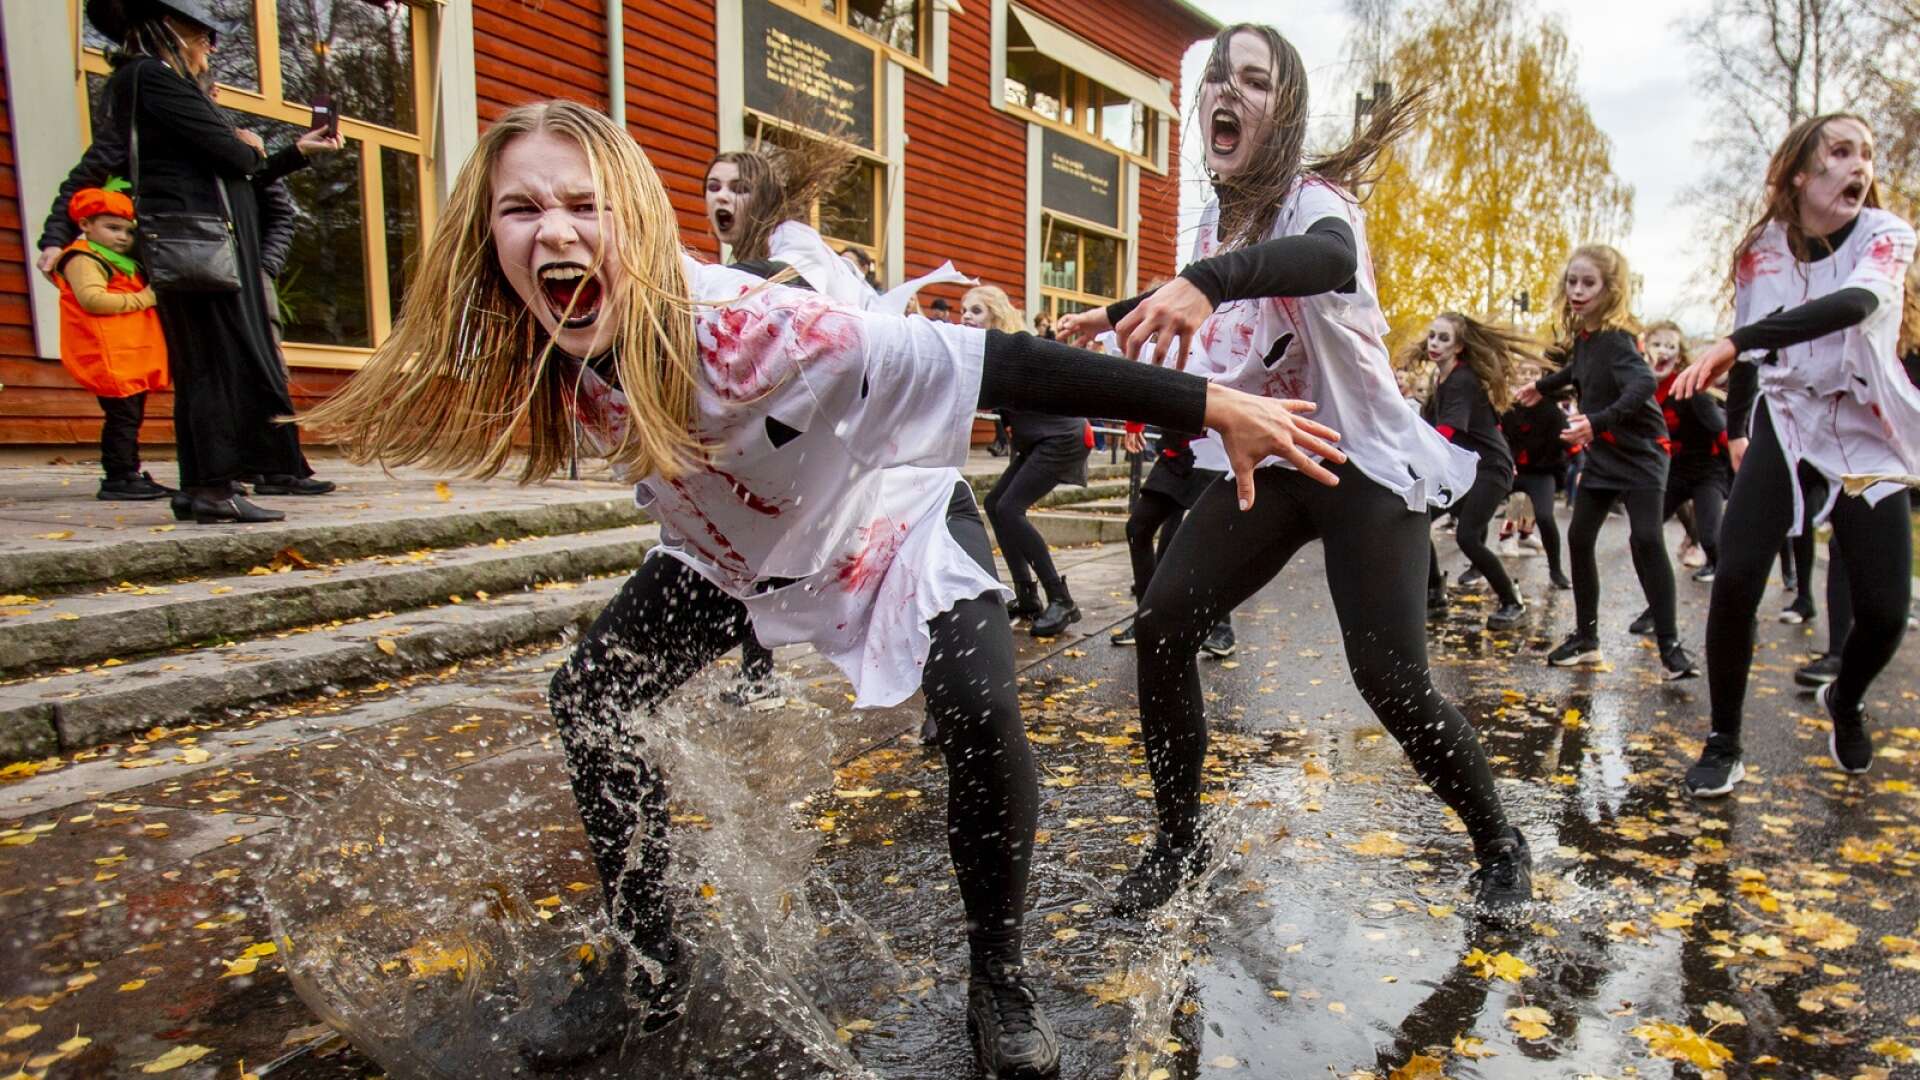 Den årliga halloweenparaden i Karlstad lockade både många deltagare och åskådare under lördagen.